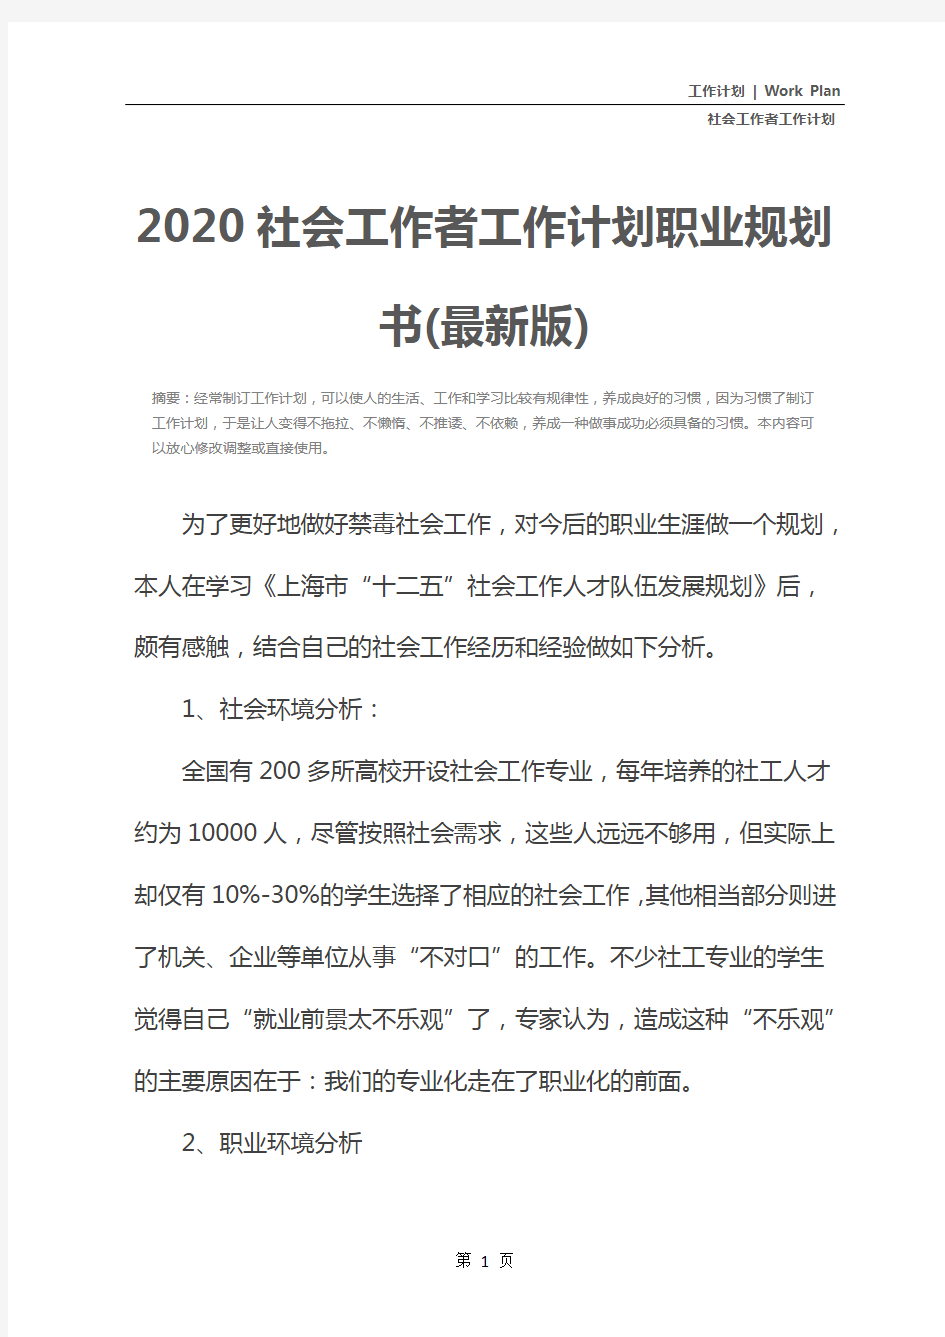 2020社会工作者工作计划职业规划书(最新版)